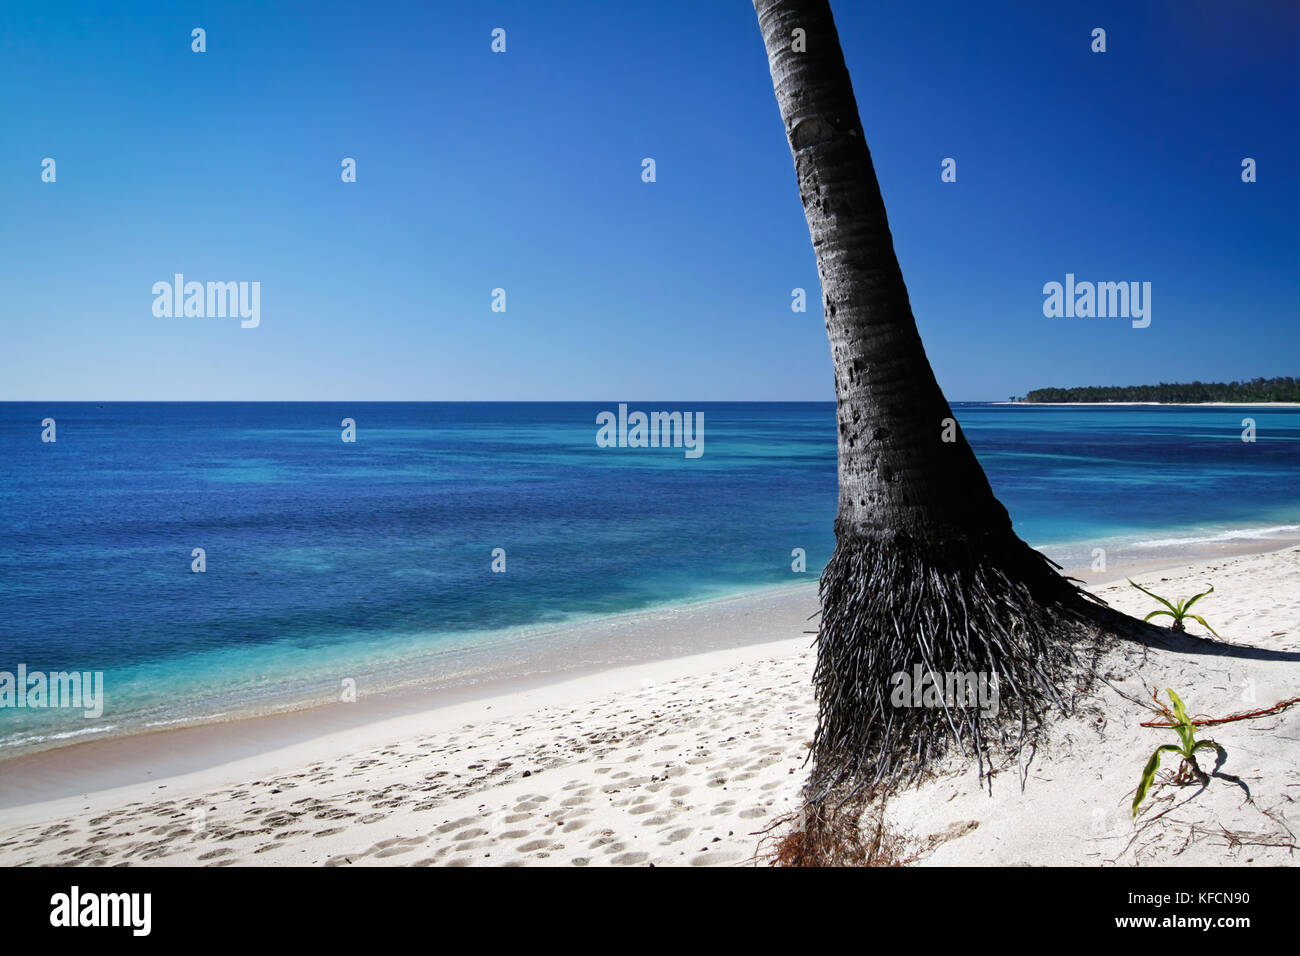 Il profondo blu del mare e la spiaggia di sabbia bianca conosciuta come saud beach in Ilocos Norte Regione del Luzon del nord nelle Filippine. bellissimo e idilliaco paradiso Foto Stock